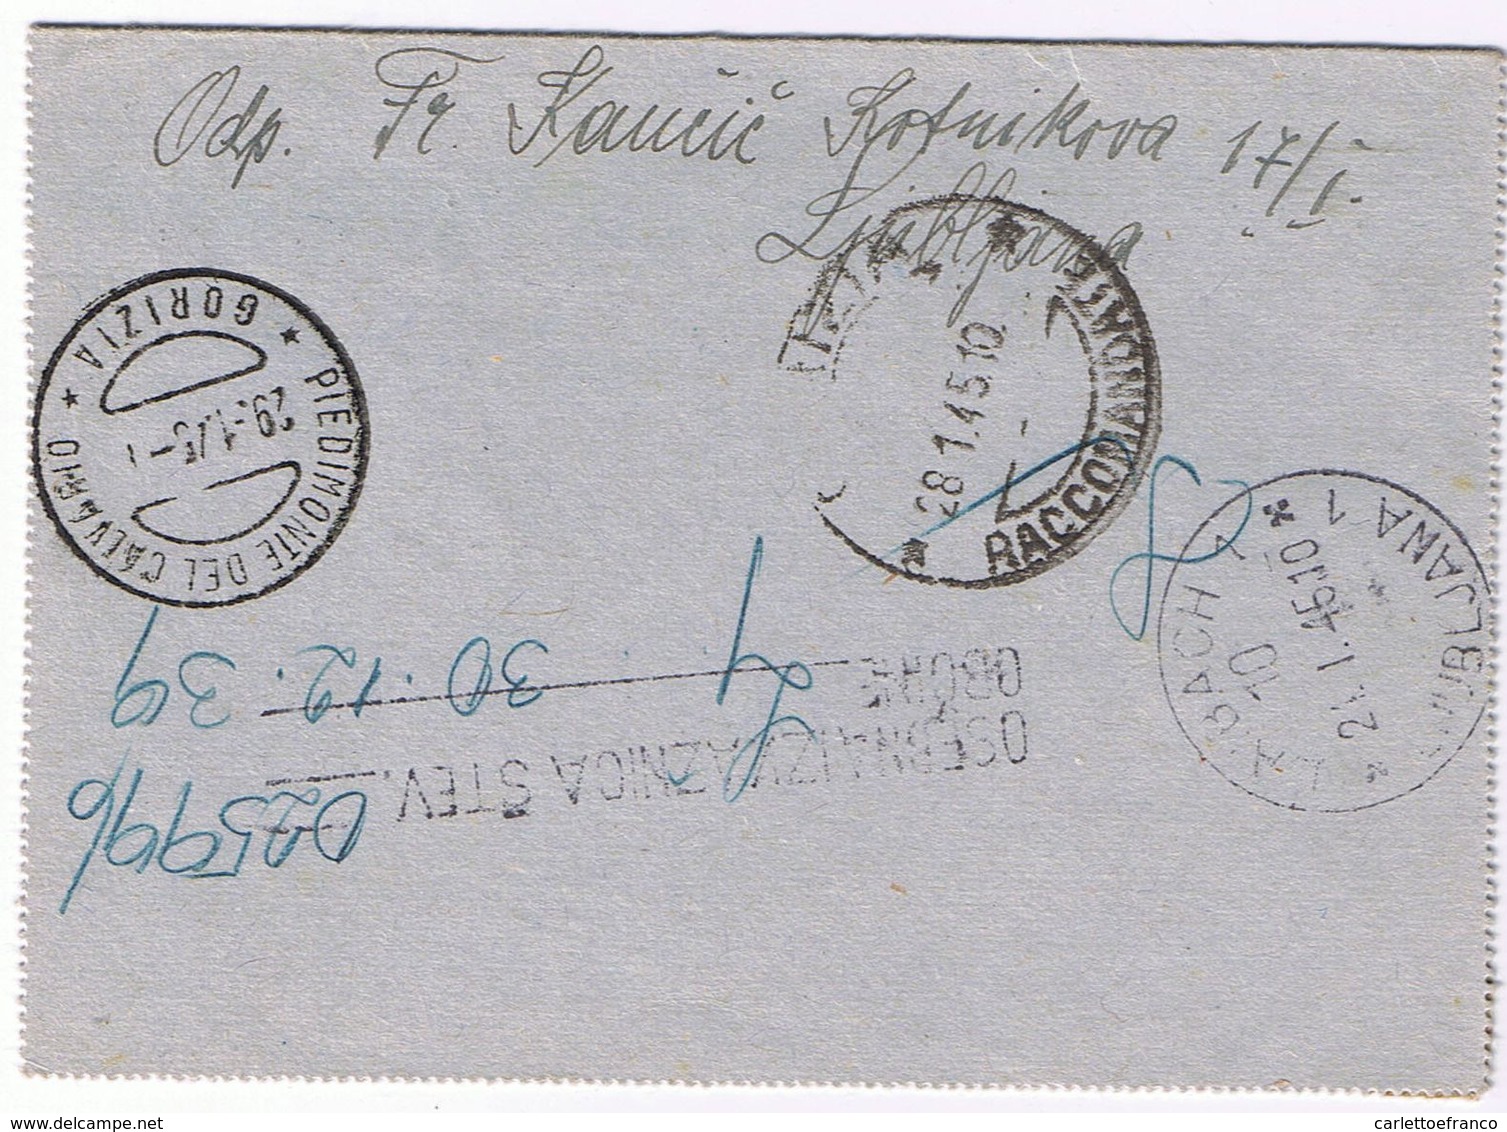 Rarissimo Biglietto Postale Raccomandato Con Sovraprezzo 1,25 - Lubiana-> Podgora (Gorizia) V. 1/1945 - Occup. Tedesca: Lubiana